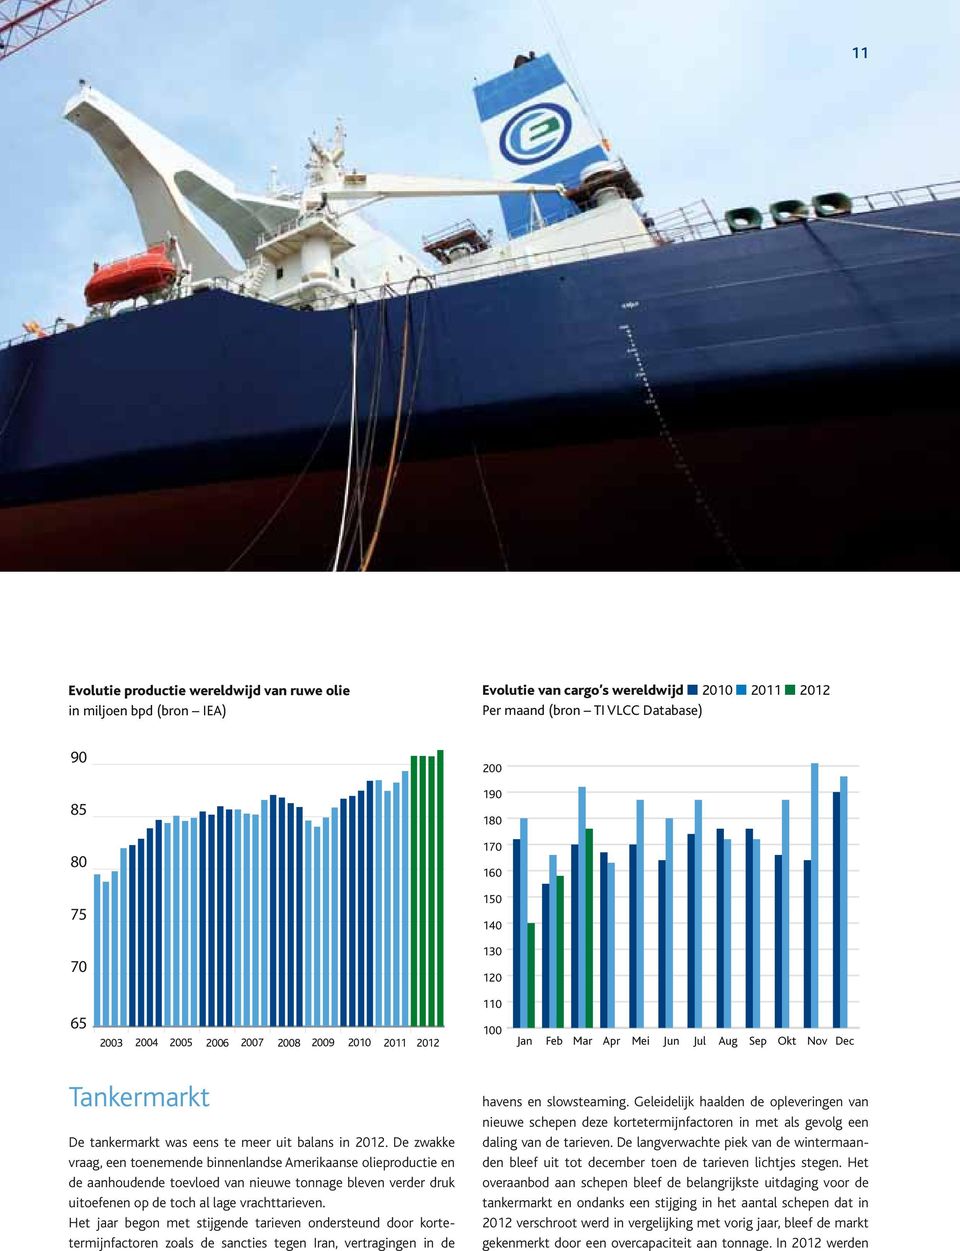 De zwakke vraag, een toenemende binnenlandse Amerikaanse olieproductie en de aanhoudende toevloed van nieuwe tonnage bleven verder druk uitoefenen op de toch al lage vrachttarieven.